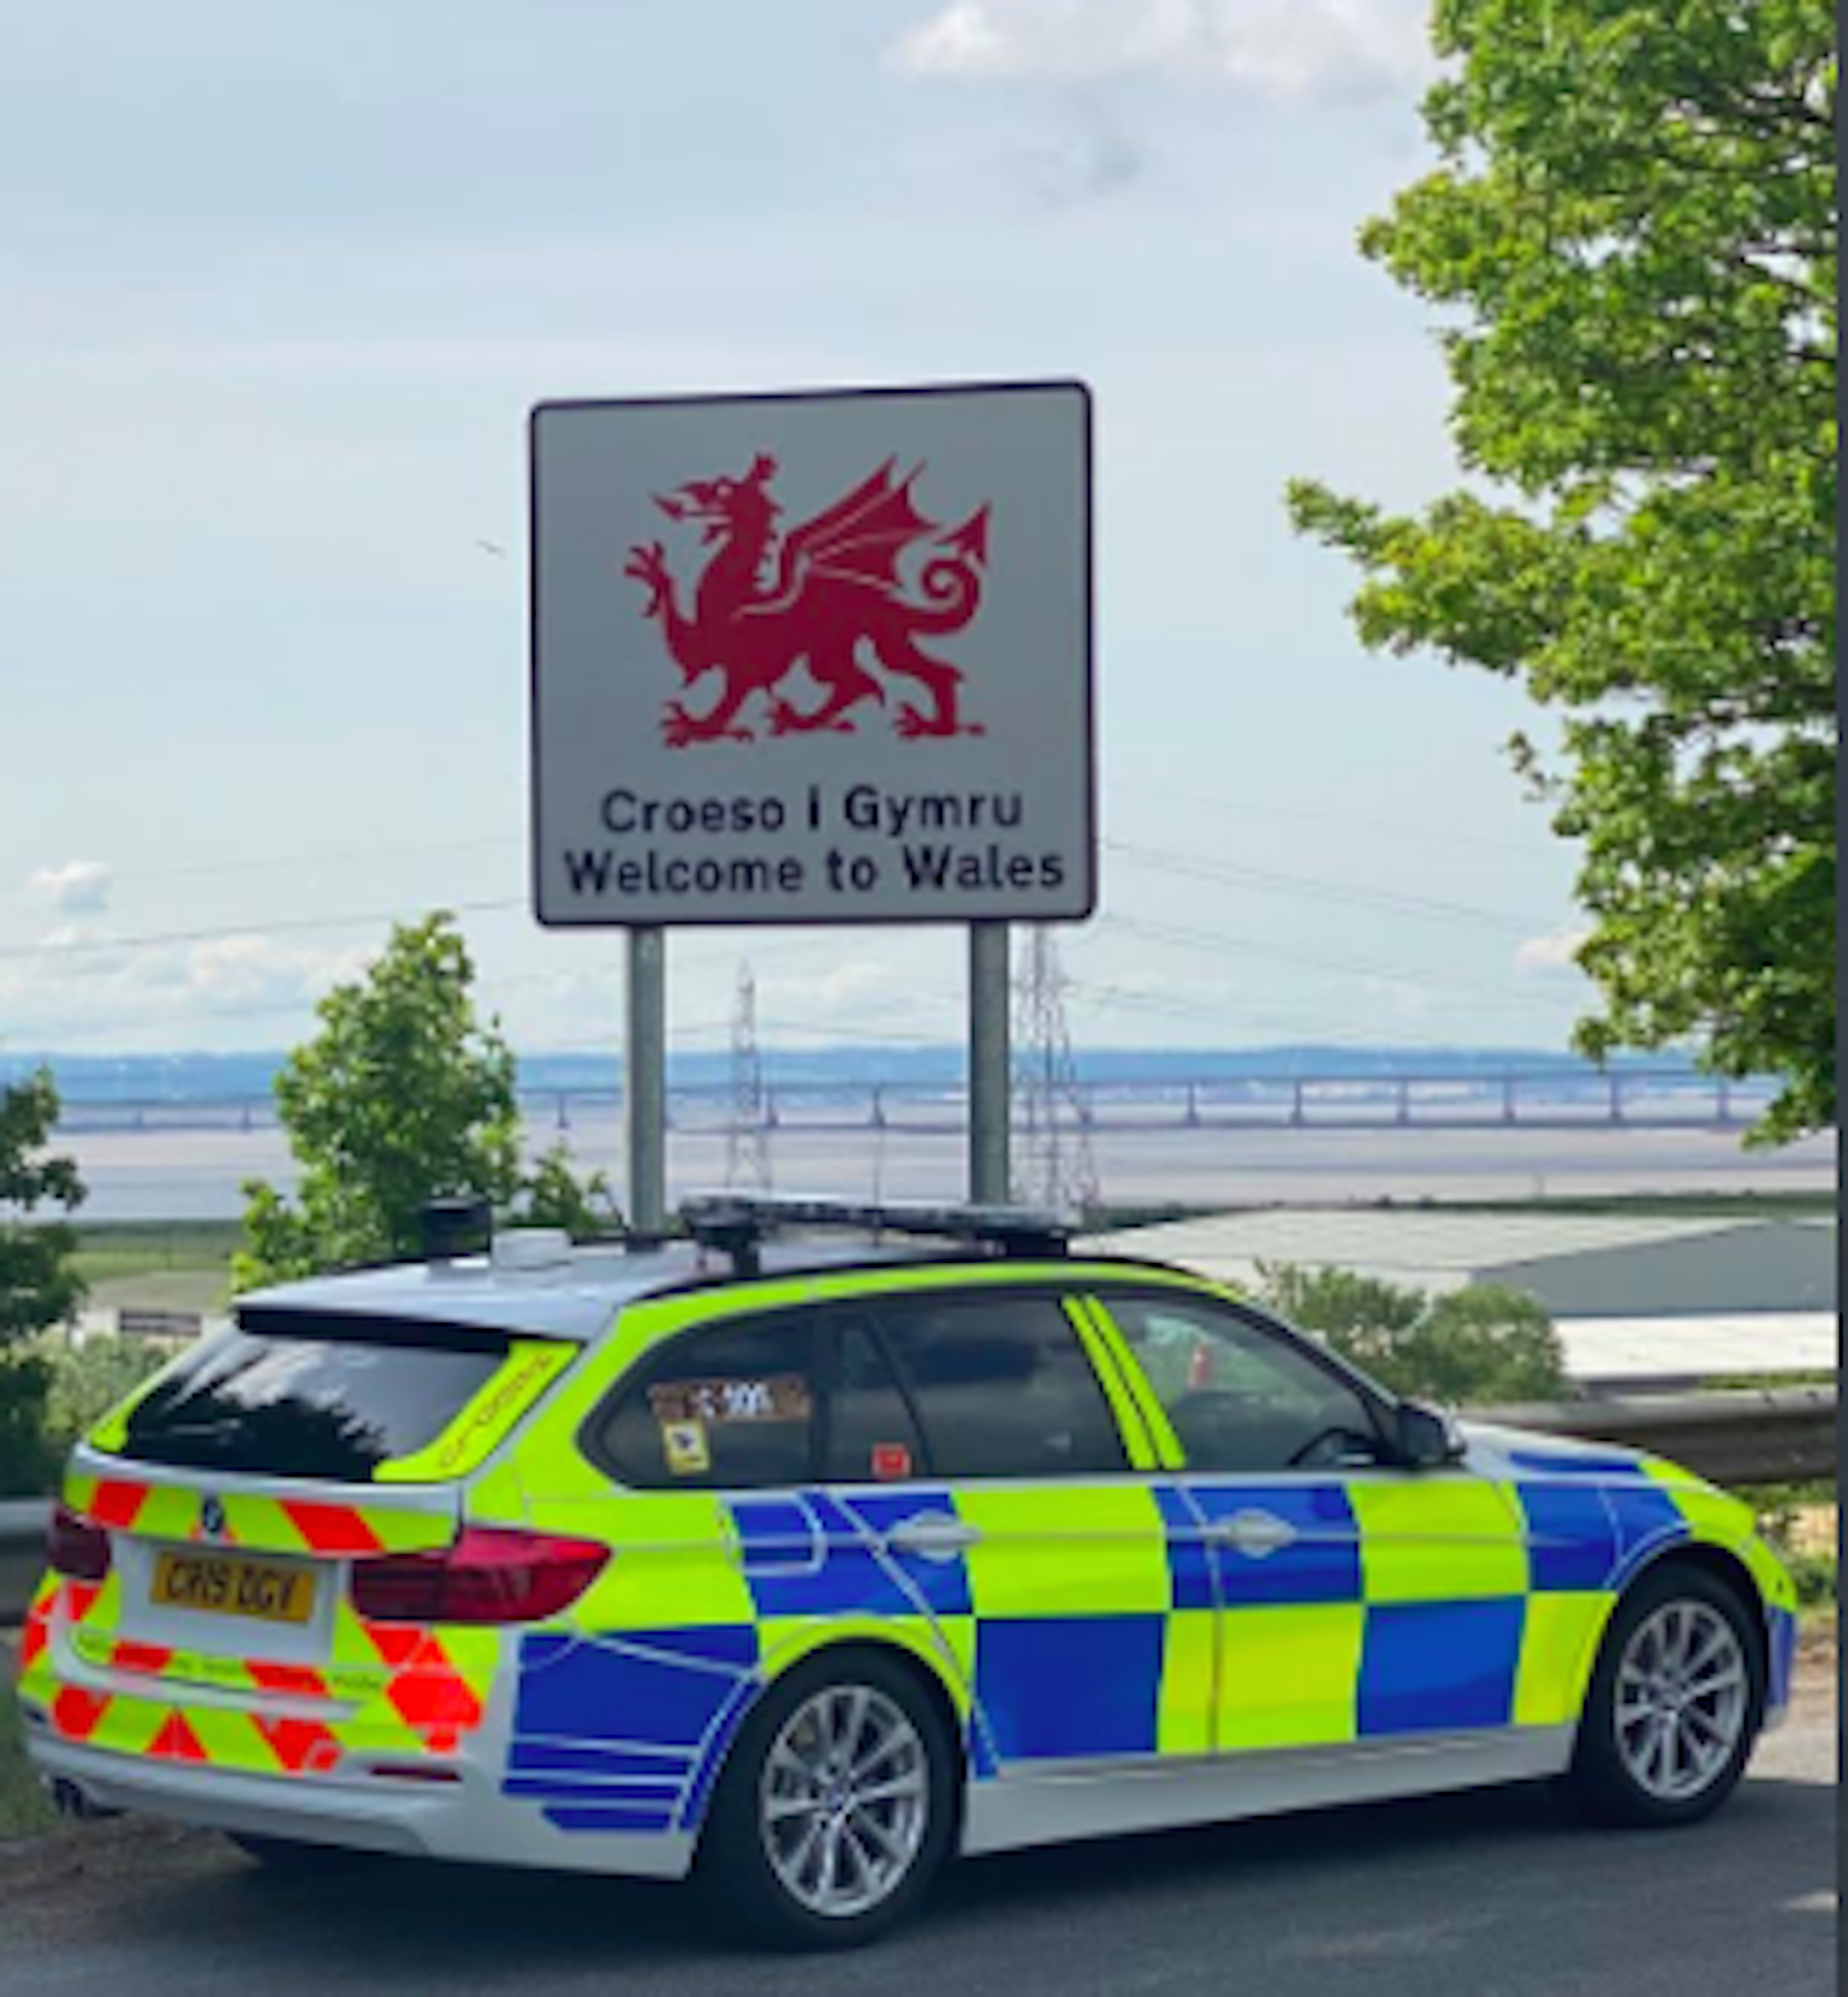 Controls policials a les fronteres d'Escòcia i Gal·les per evitar els anglesos